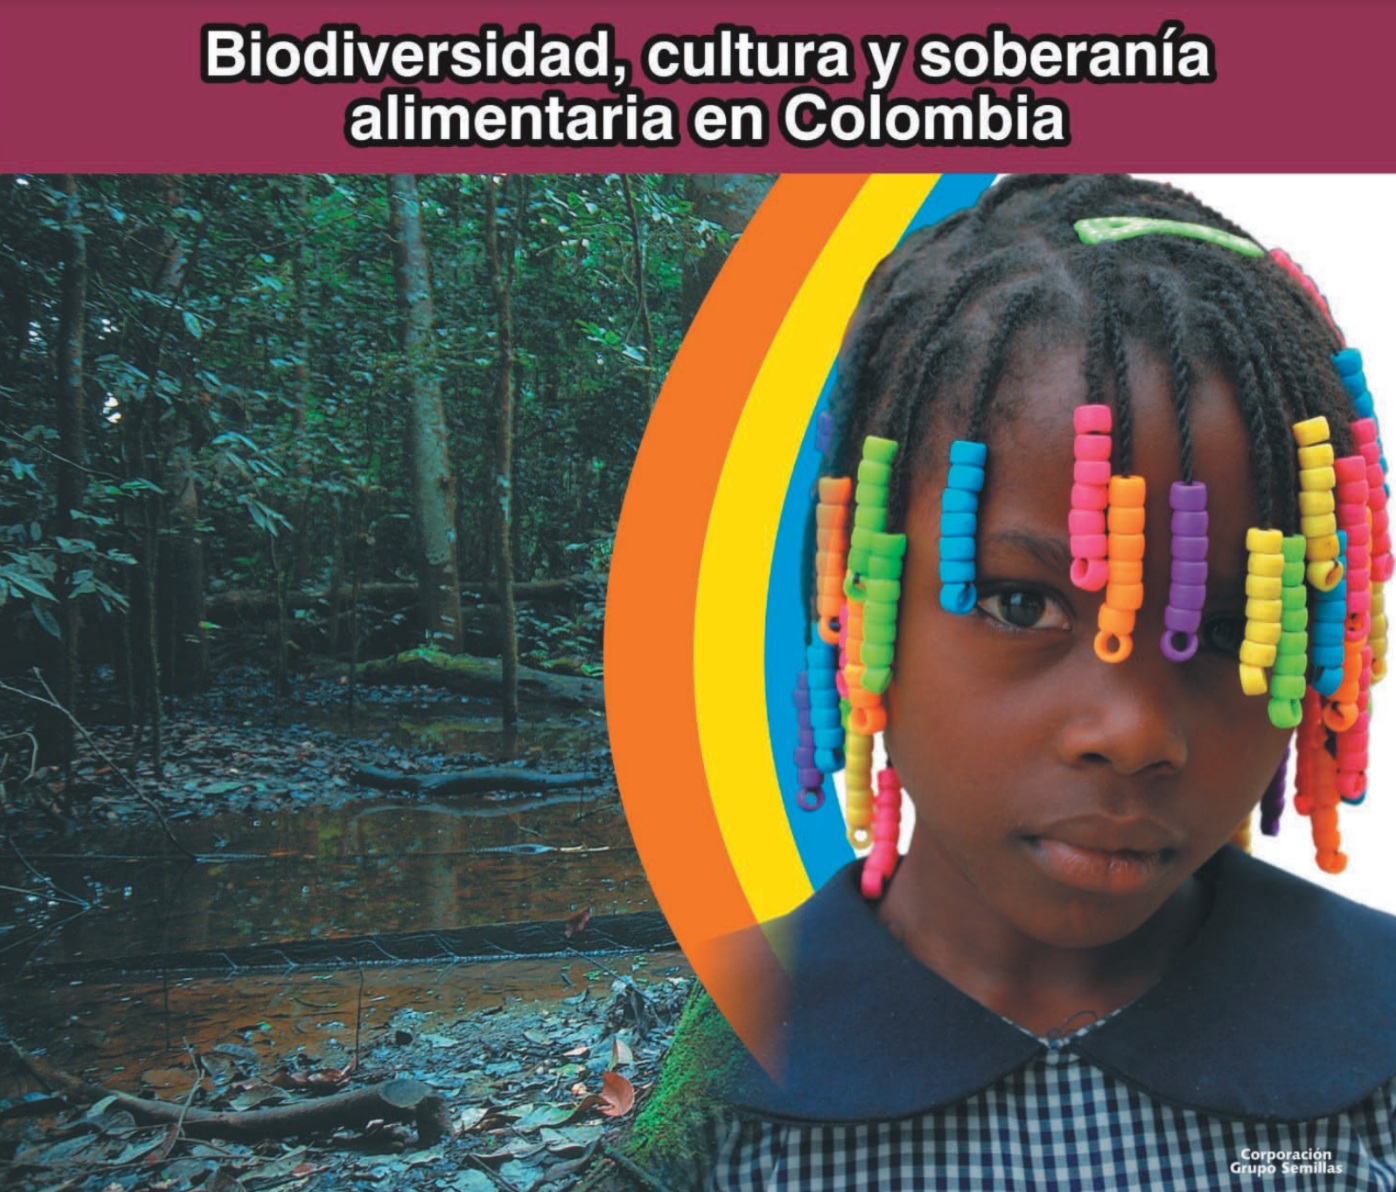 Grafica alusiva a Biodiversidad, cultura y soberanía alimentaria en Colombia